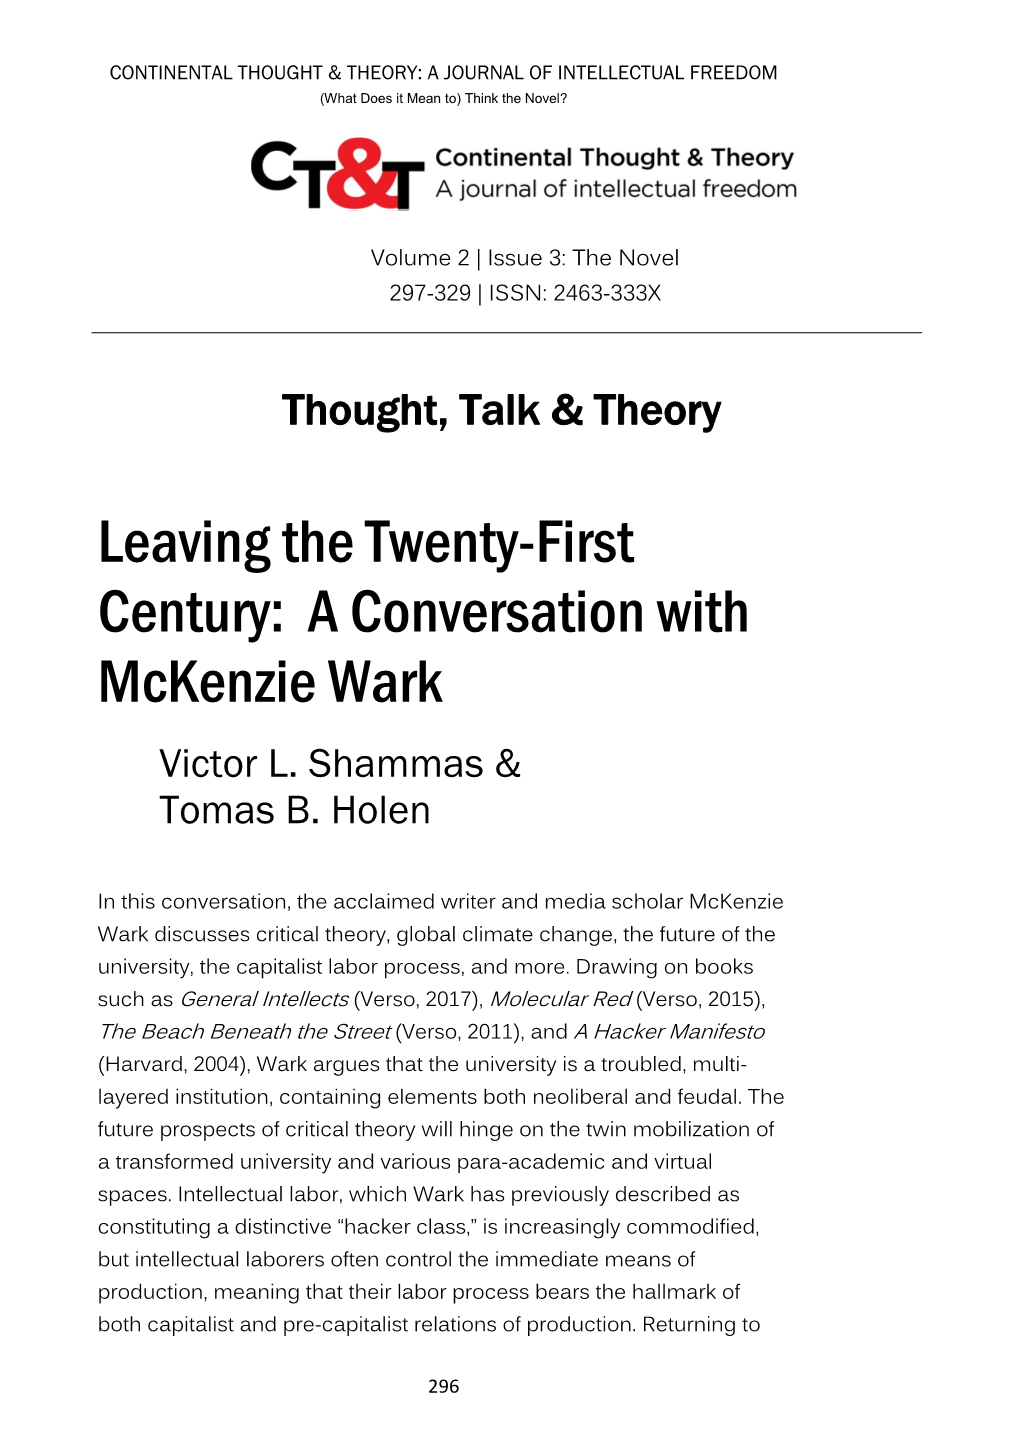 Leaving the Twenty-First Century: a Conversation with Mckenzie Wark